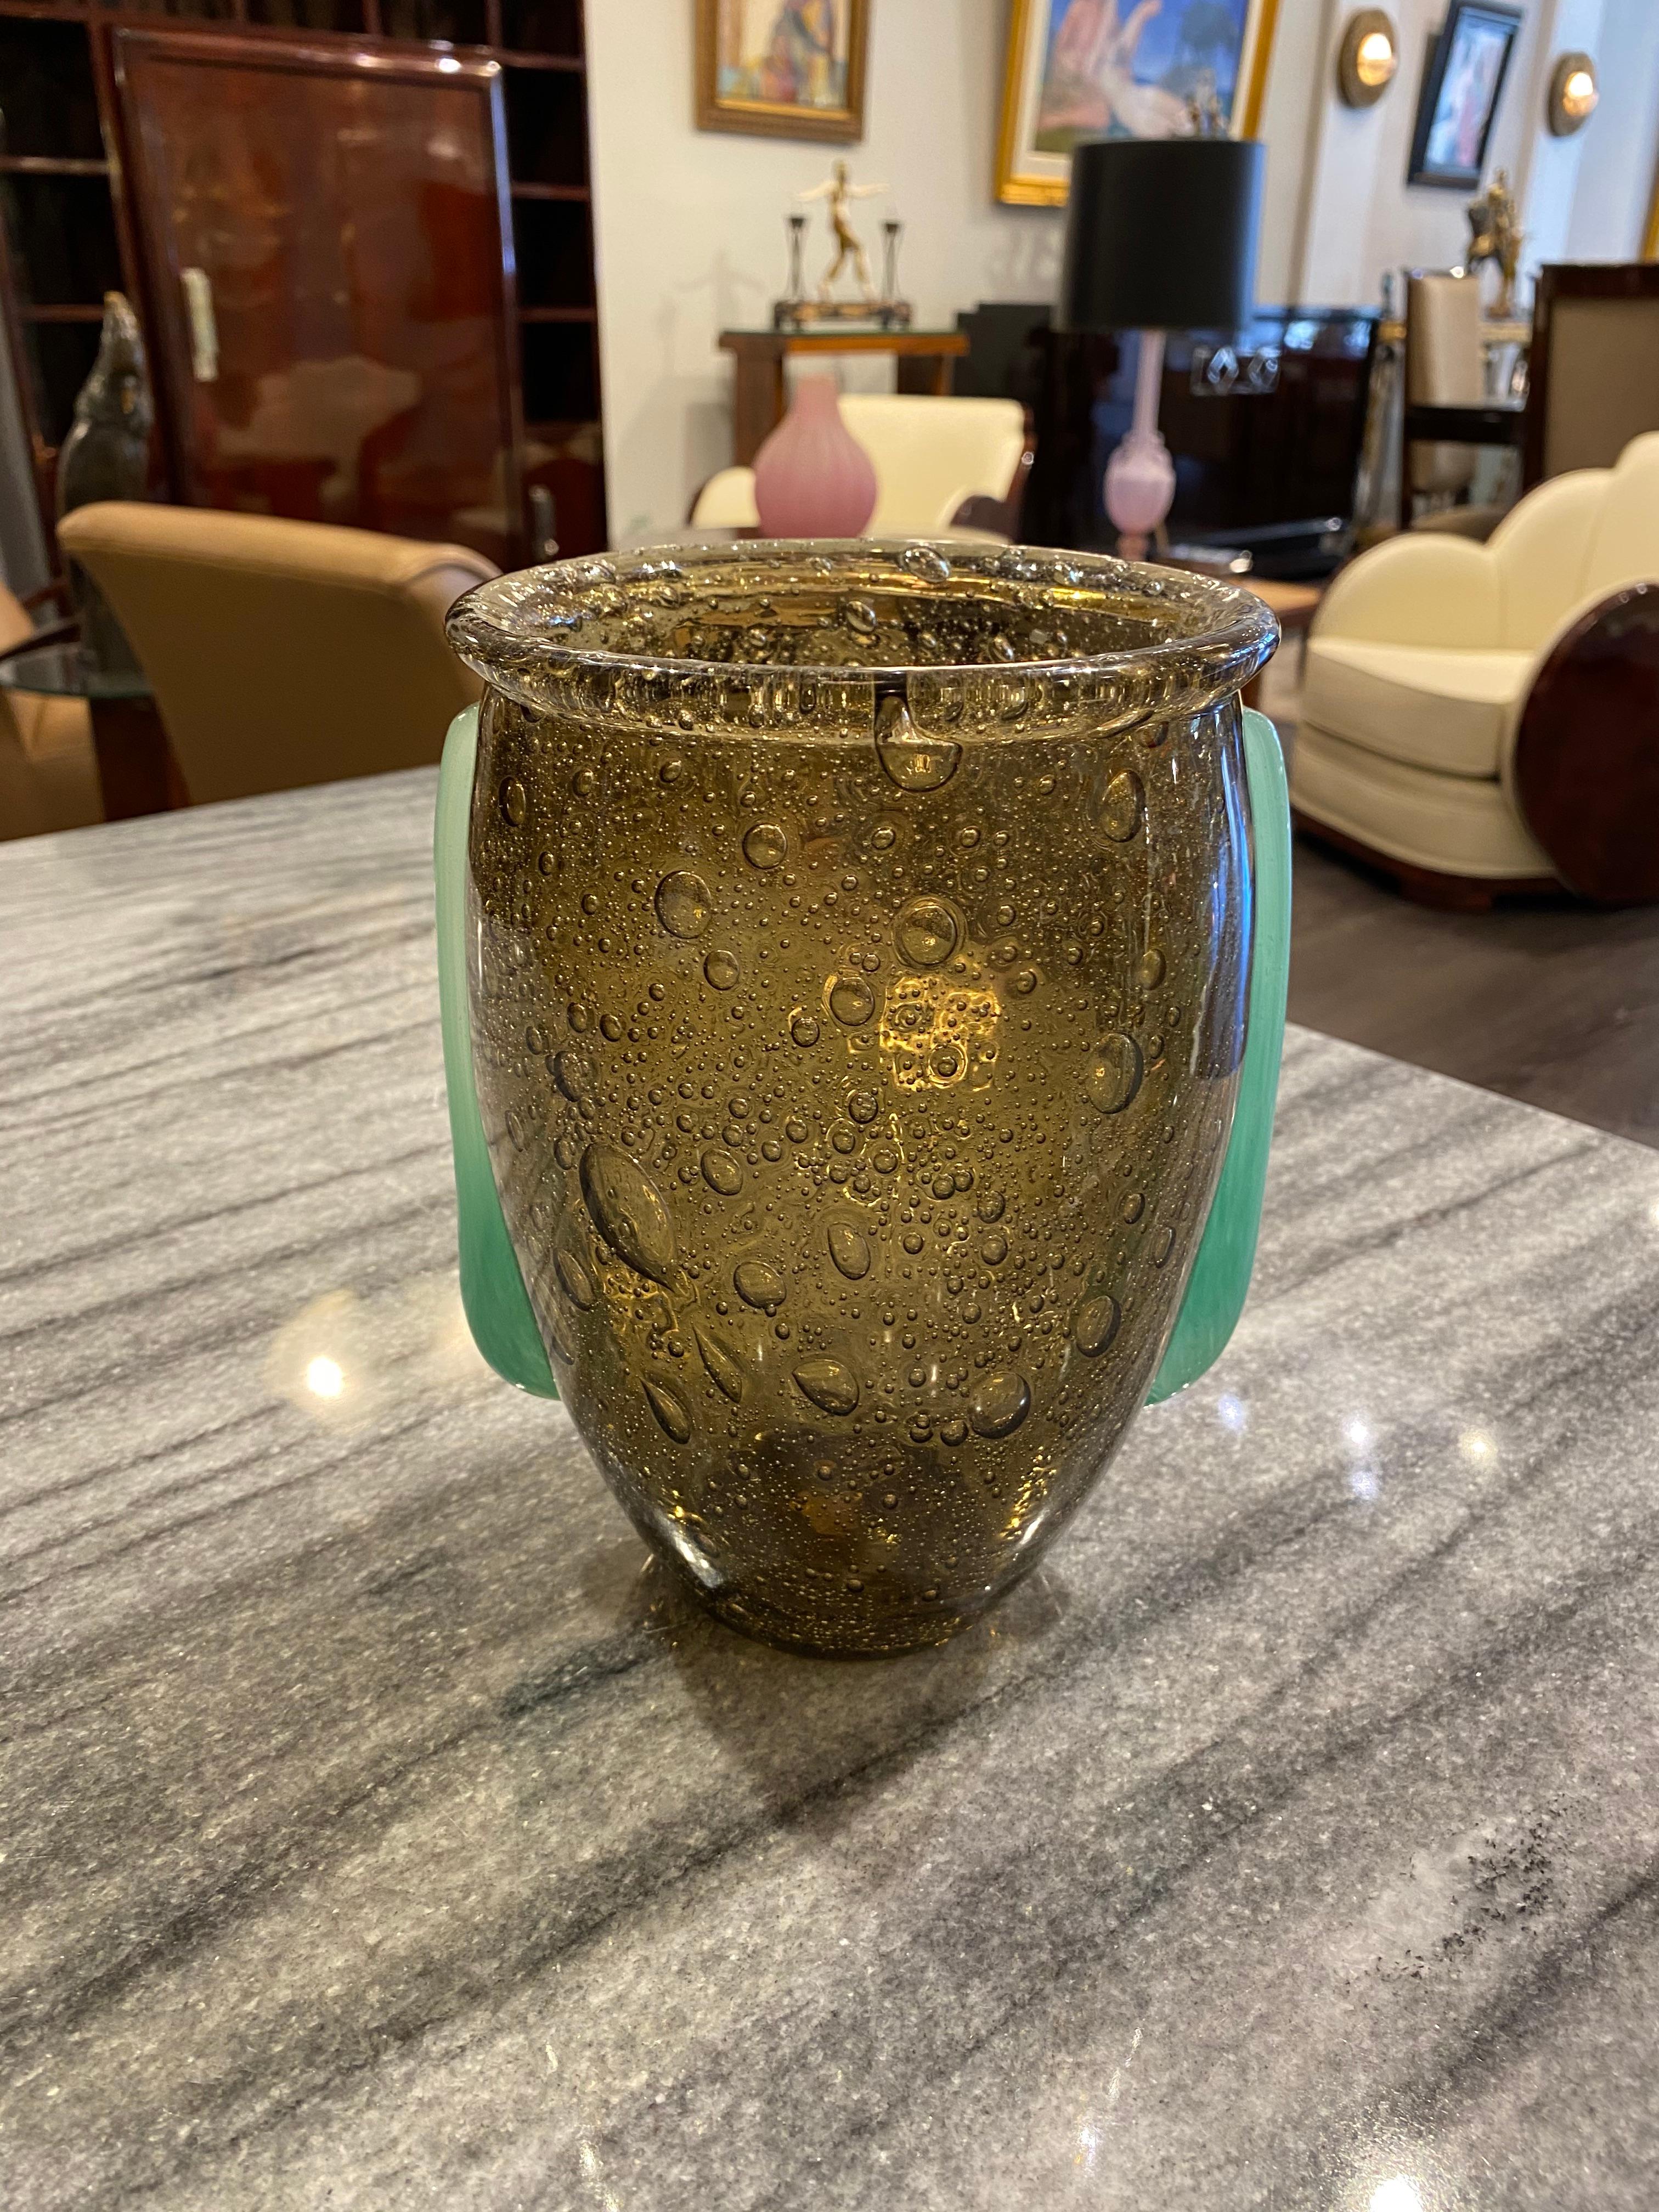 Eine rauchgraue Vase mit blasigem Glaskörper.  Auf jeder Seite der Vase befinden sich Henkel/Applikationen aus jadegrünem, gepulvertem Glas.  Dieses Stück ist bei Sammlern sehr begehrt, da es heutzutage nur noch wenige Exemplare gibt.  Dieses Stück